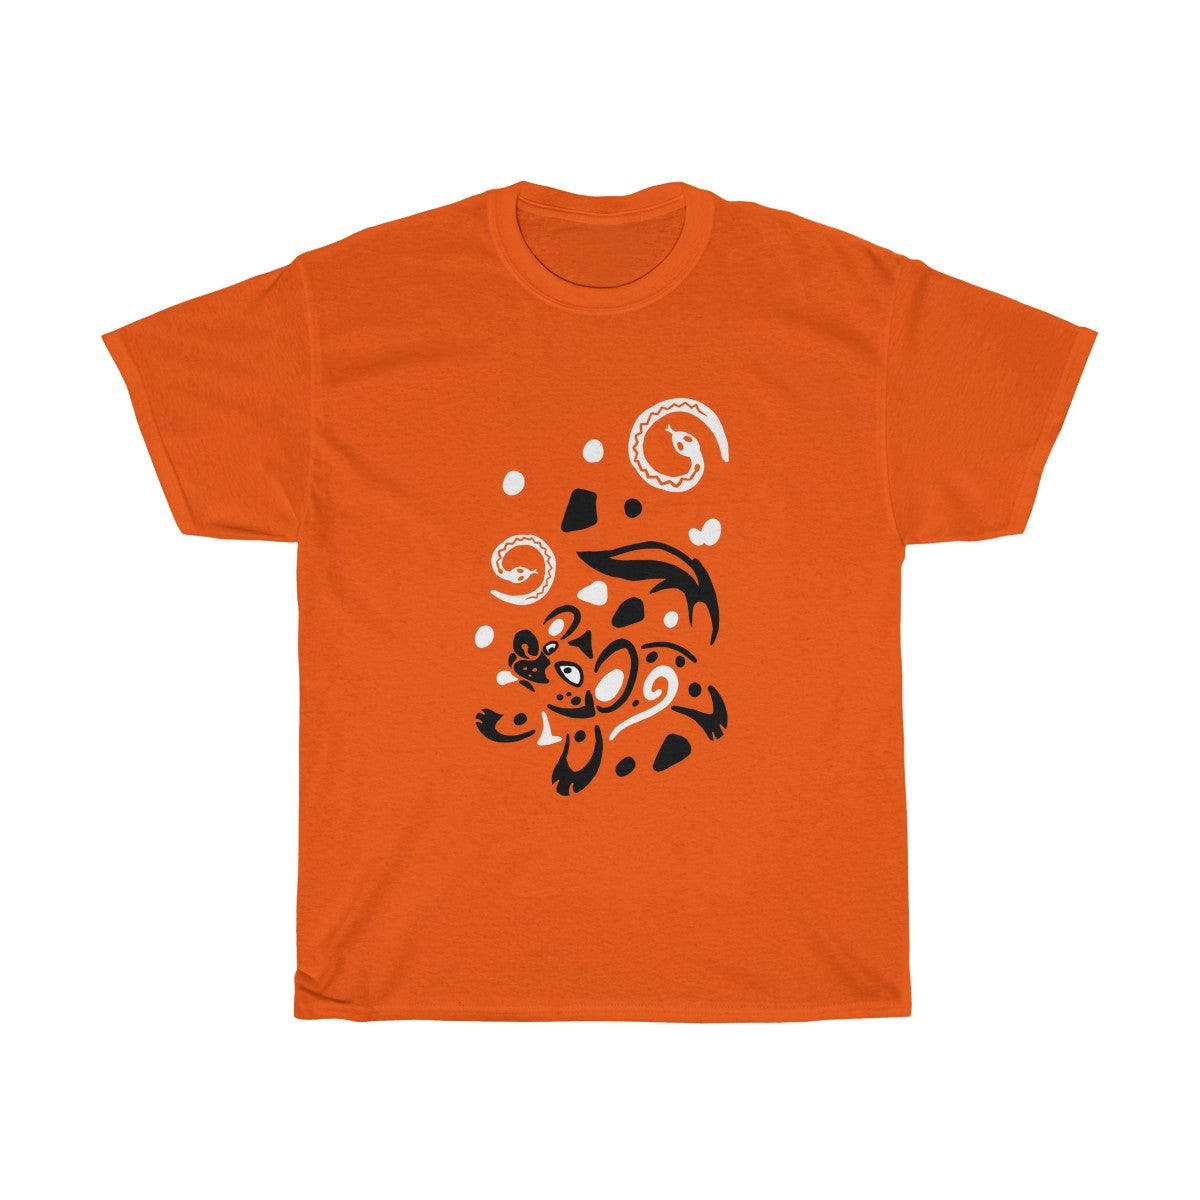 Yeens & Sneks - T-Shirts T-Shirt Dire Creatures Orange S 